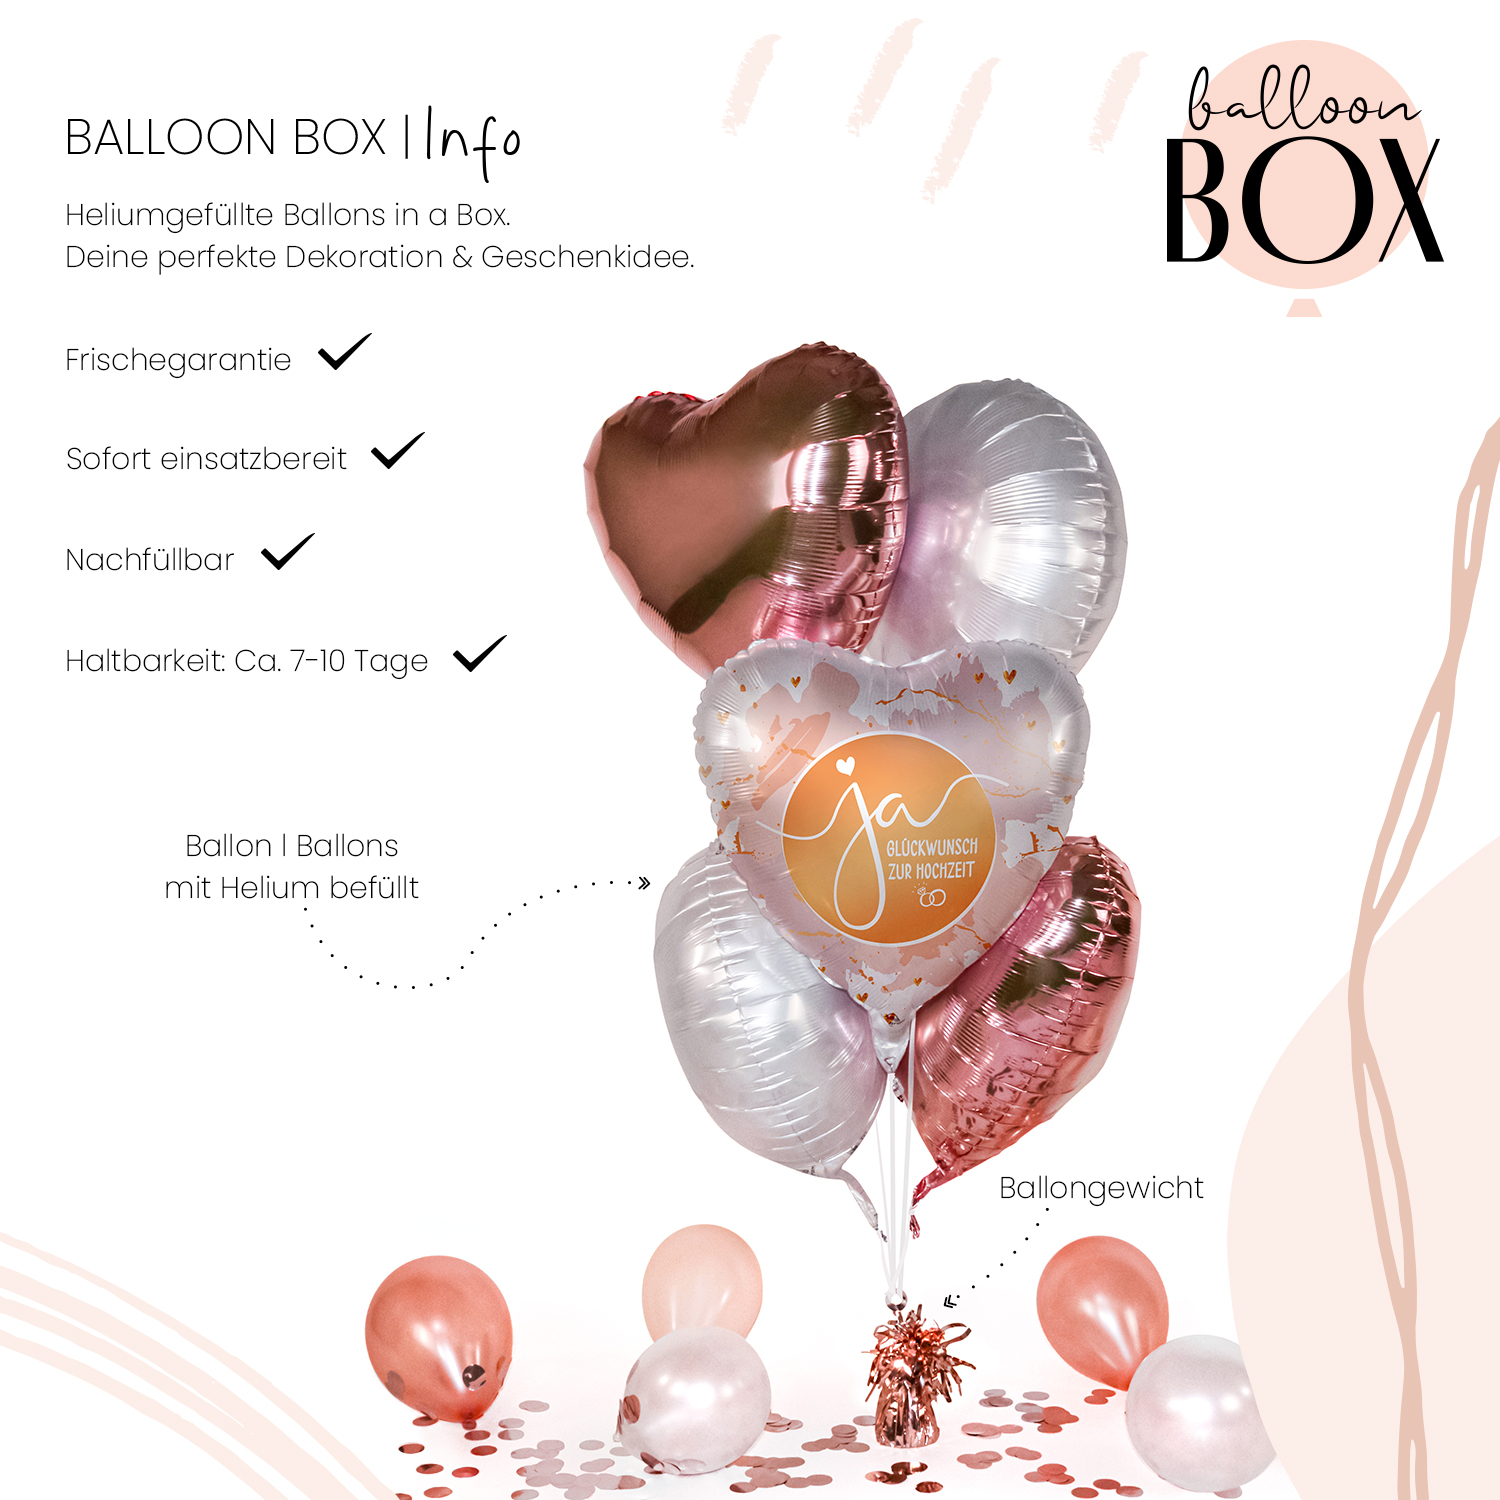 Heliumballon in a Box - Ja Glückwunsch zur Hochzeit